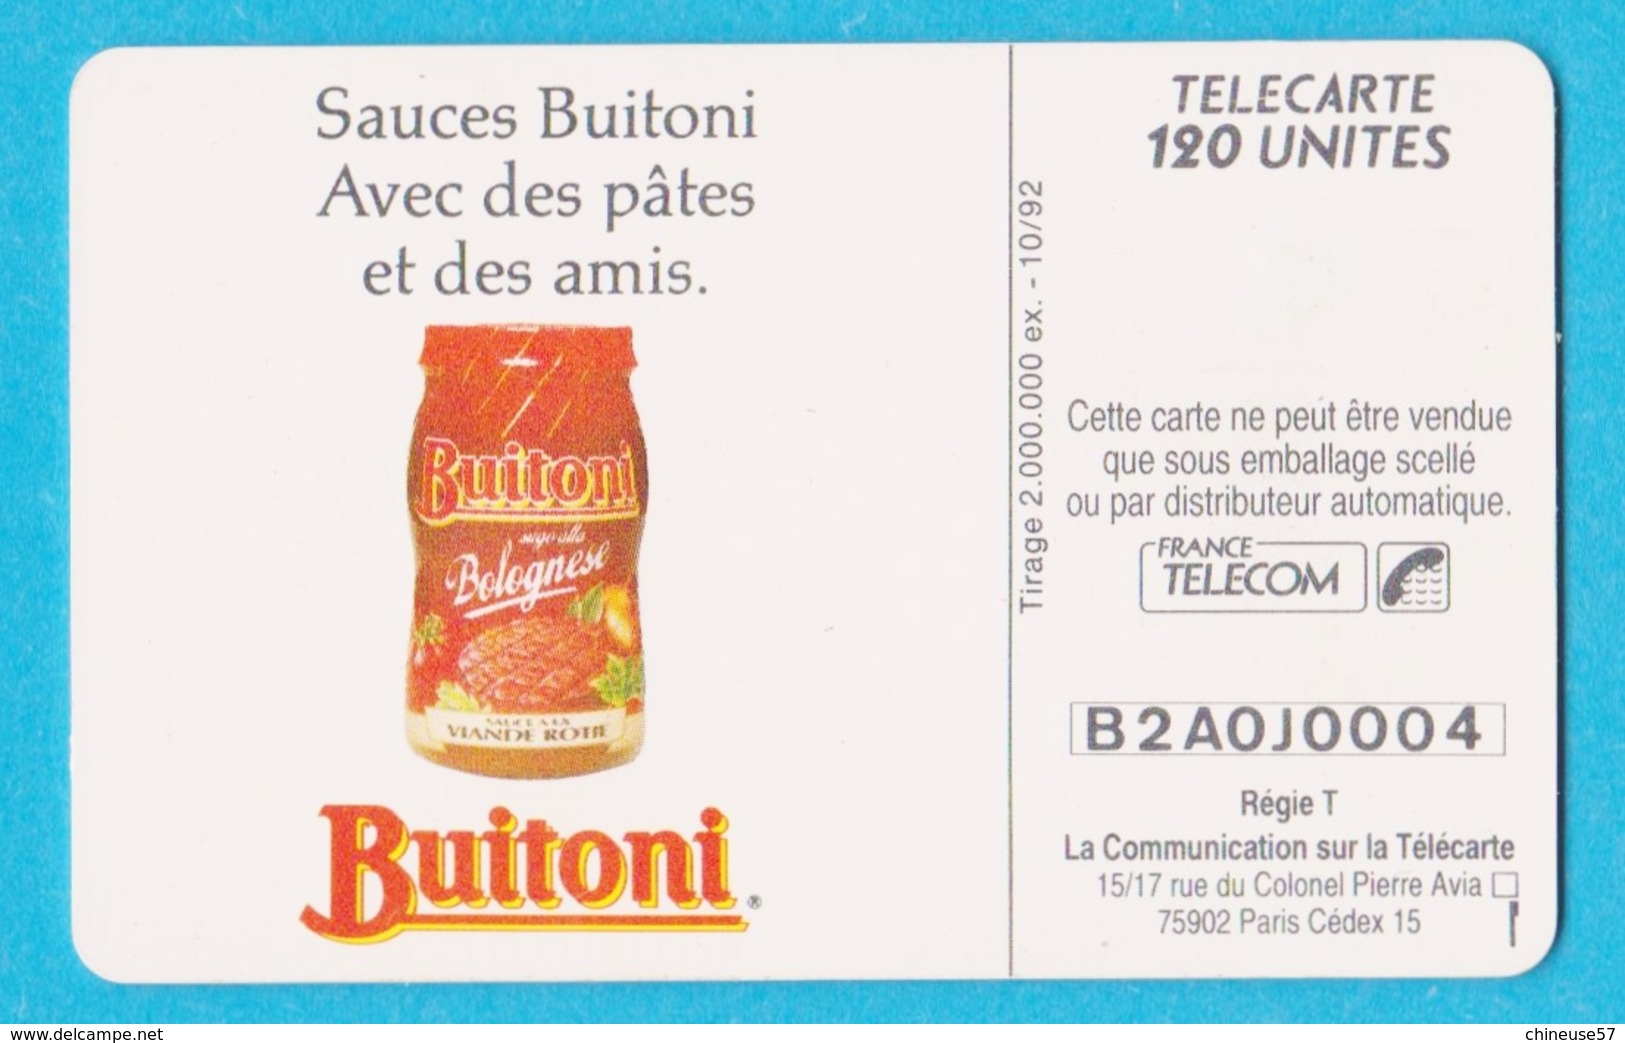 Télécarte 120 Buitoni Sauces Pates - 120 Einheiten